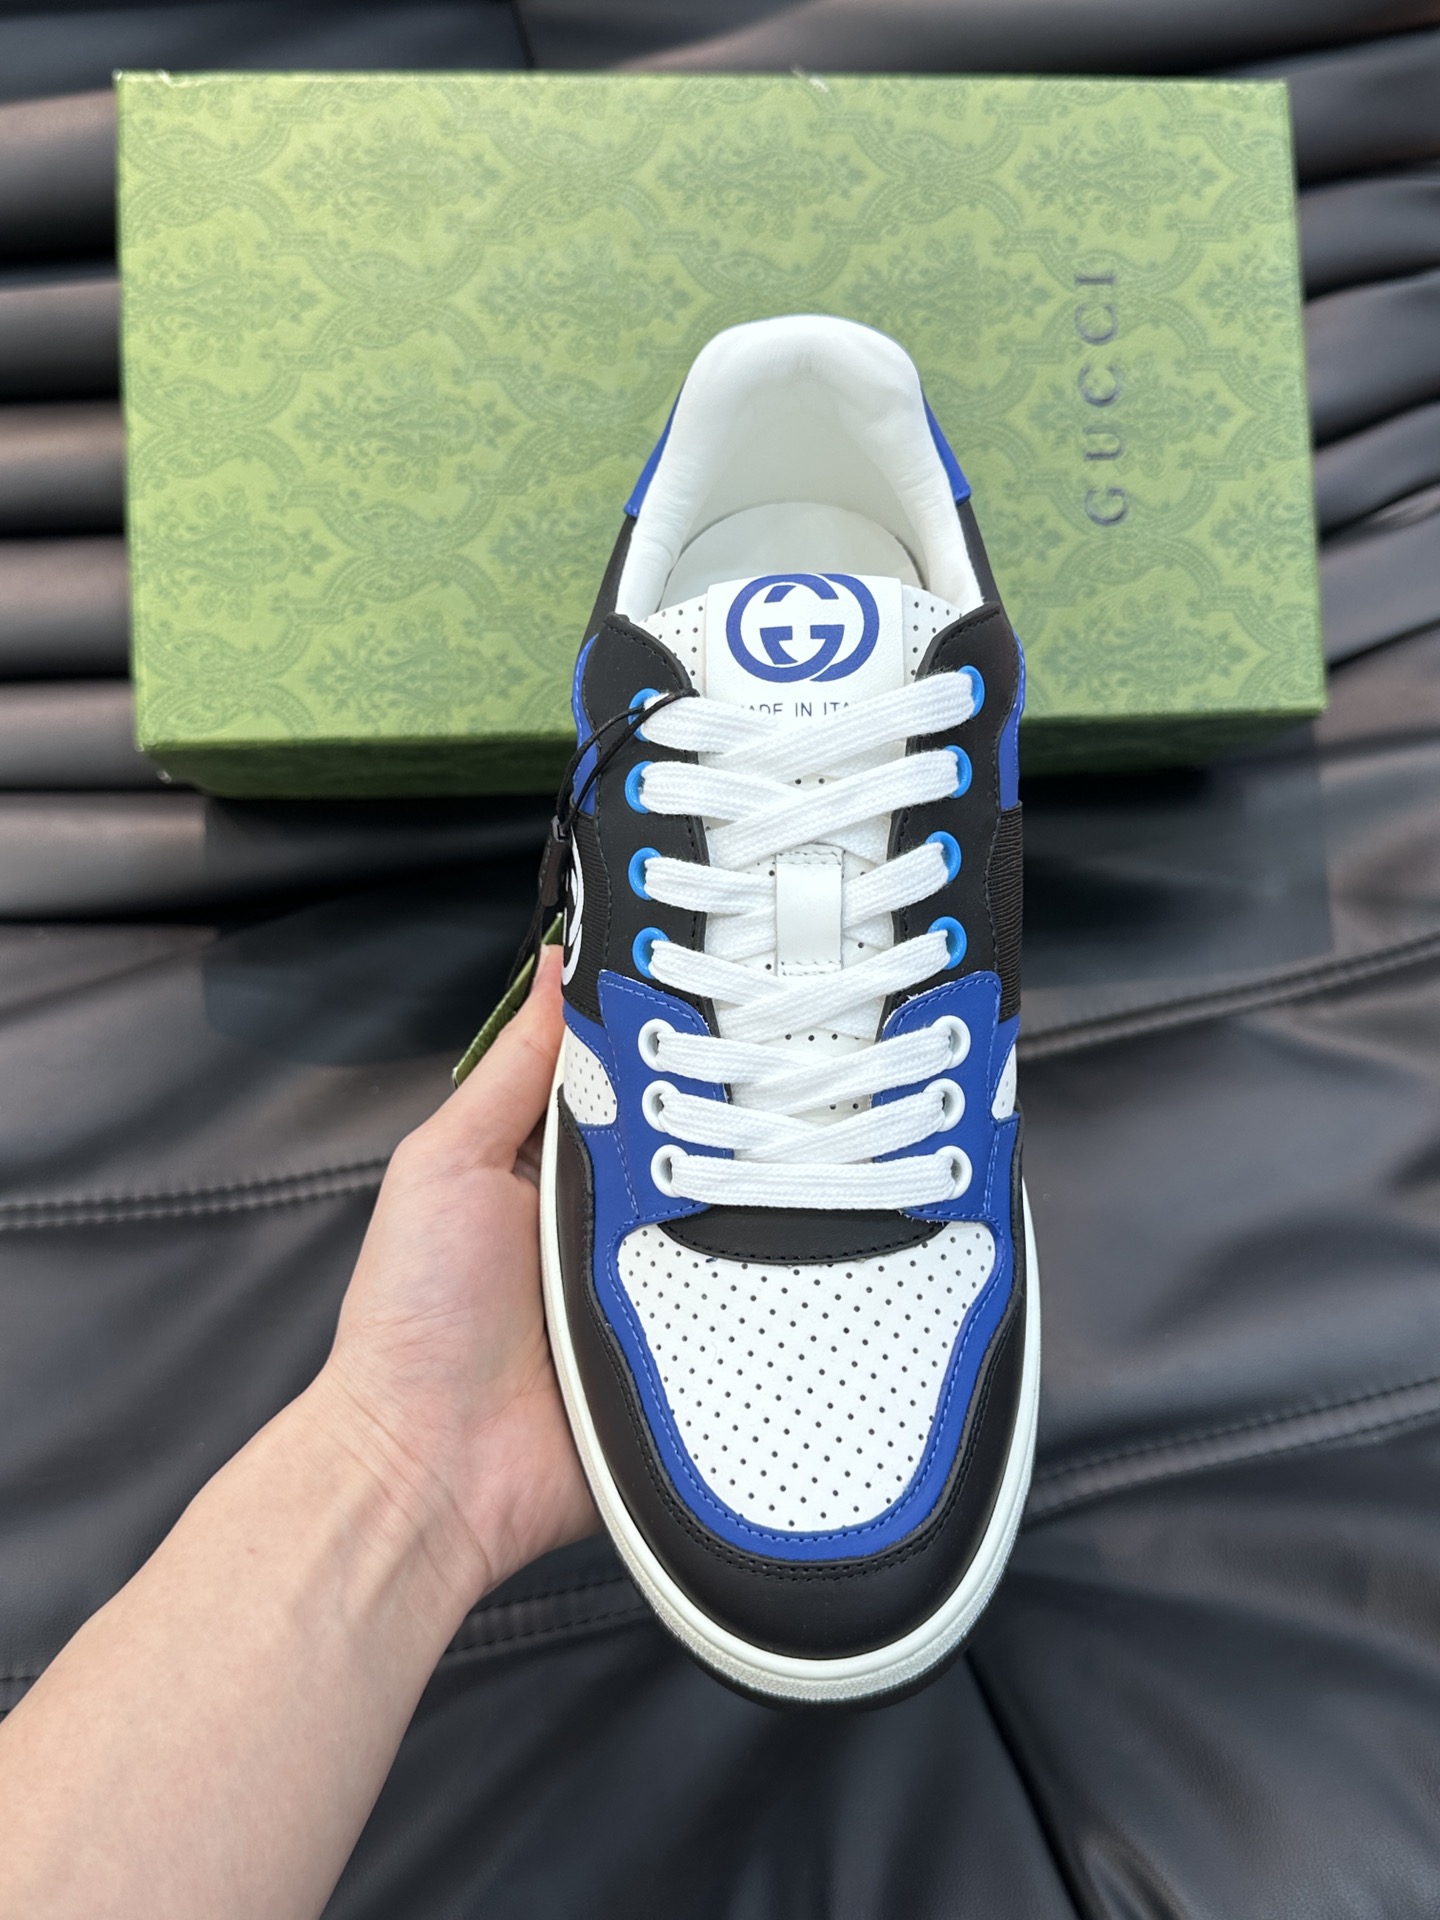 Guc*i男士MAC80运动鞋全皮版顶级品质品相完美精致小巧的互扣式双G标识浪漫诠释此系列的美学理念选用